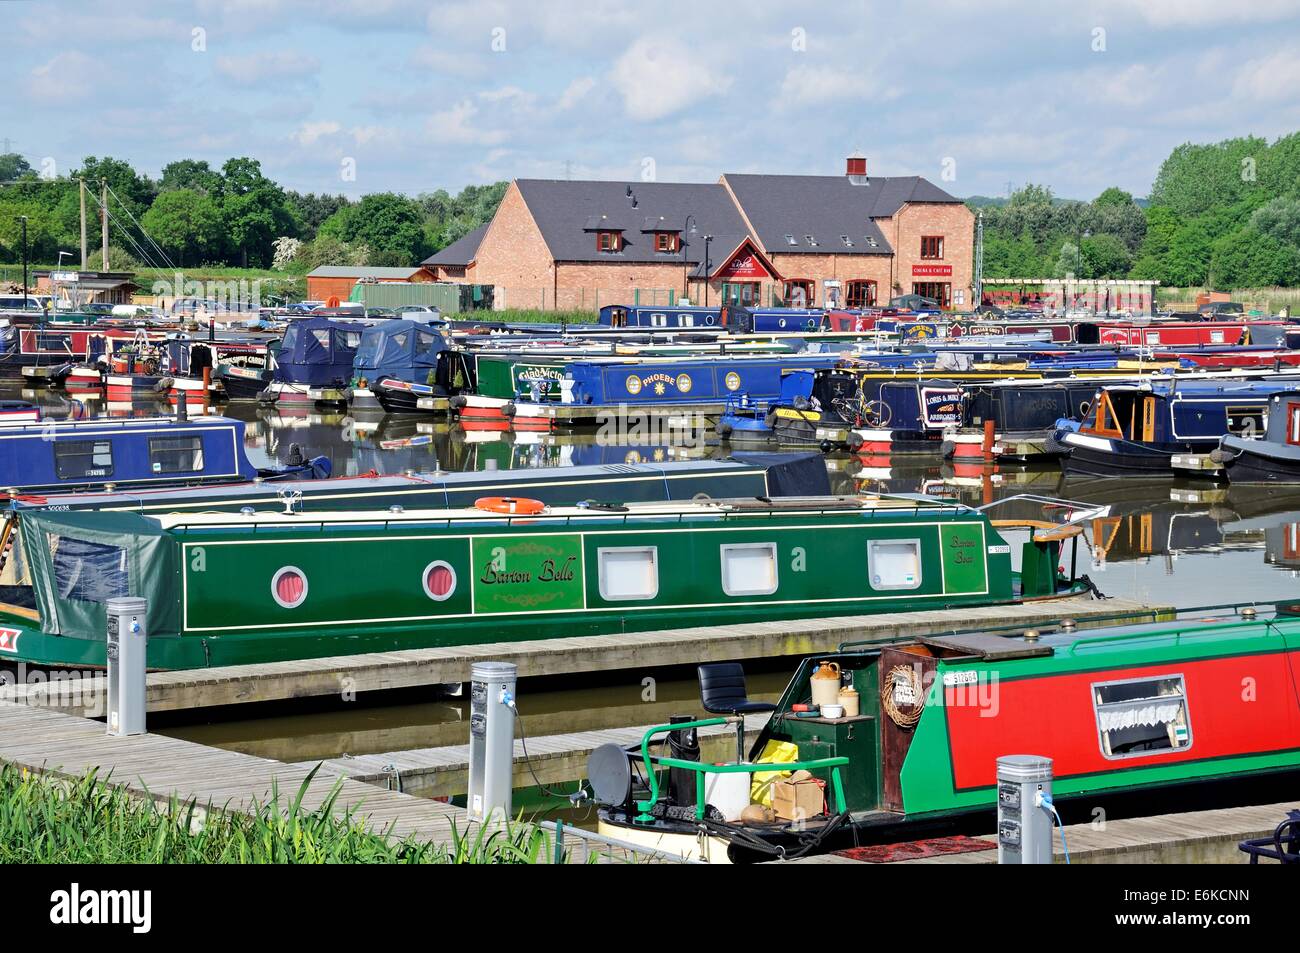 Narrowboats sur leurs amarres dans le bassin du canal avec des bars, boutiques et restaurants à l'arrière, Barton-under-Needwood, UK. Banque D'Images